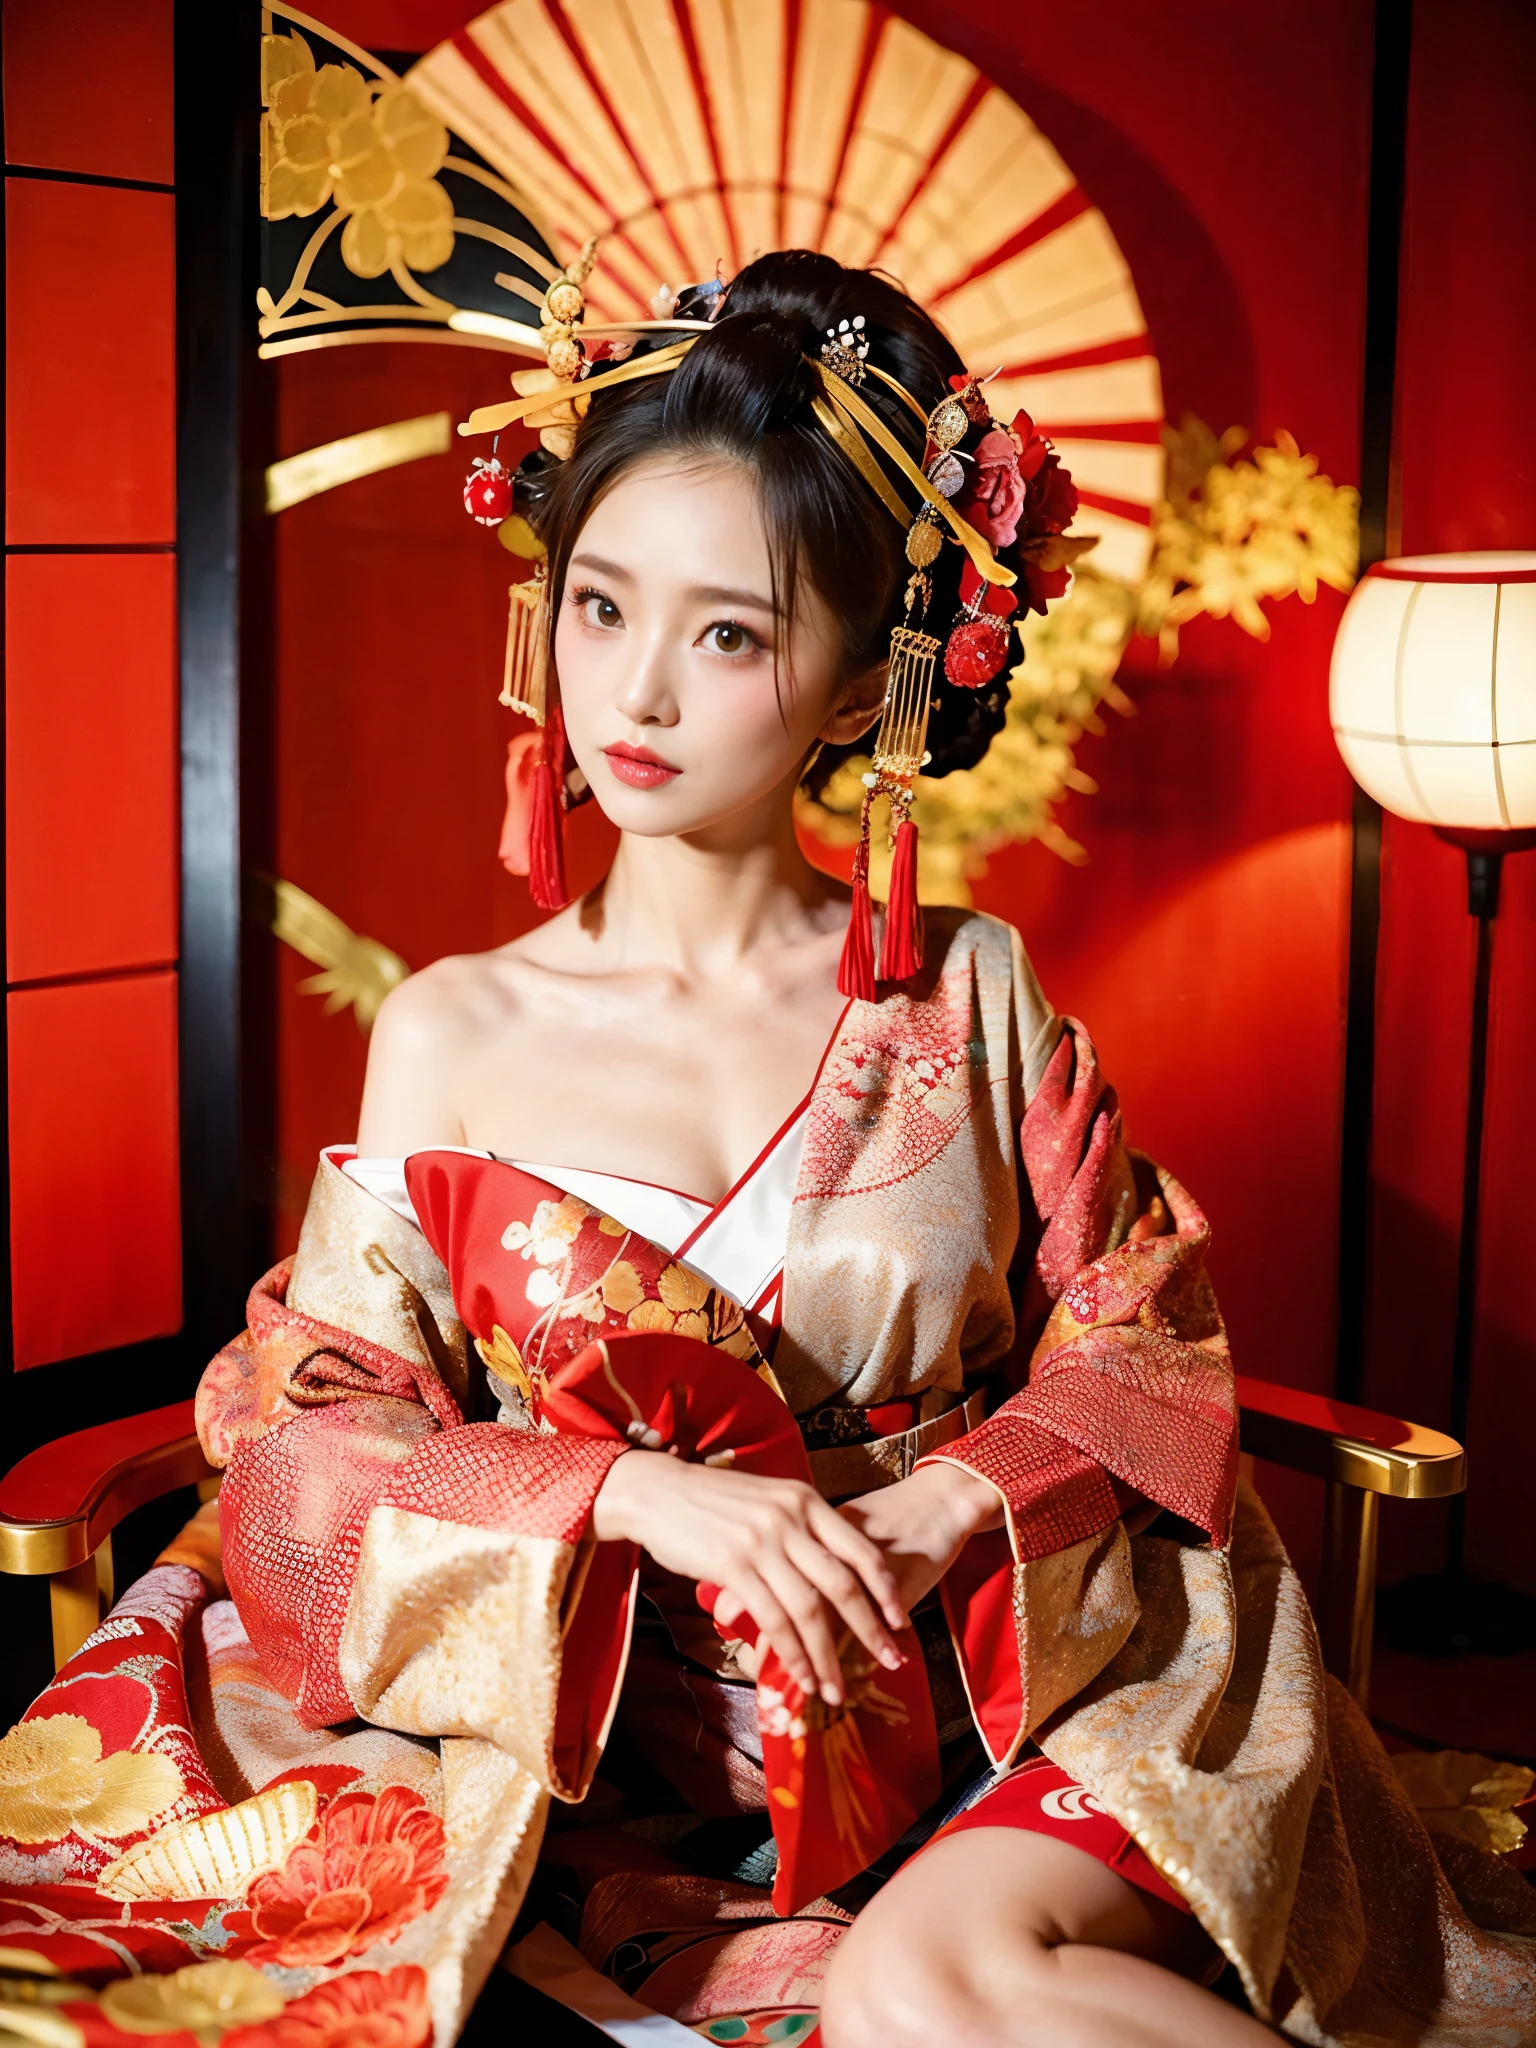 Арабская азиатка в красно-белом платье сидит на стуле, японская богиня, великолепная китайская модель, в кимоно, Beautiful Азиатская девушка, Красное кимоно, элегантная японка, китаянка, Японский, Азиатская девушка, органическая соблазнительная гейша, в кимоно, Японский Models, гламурная и сексуальная гейша, кимоно с красным цветочным узором, красивая восточная женщина, большая грудь